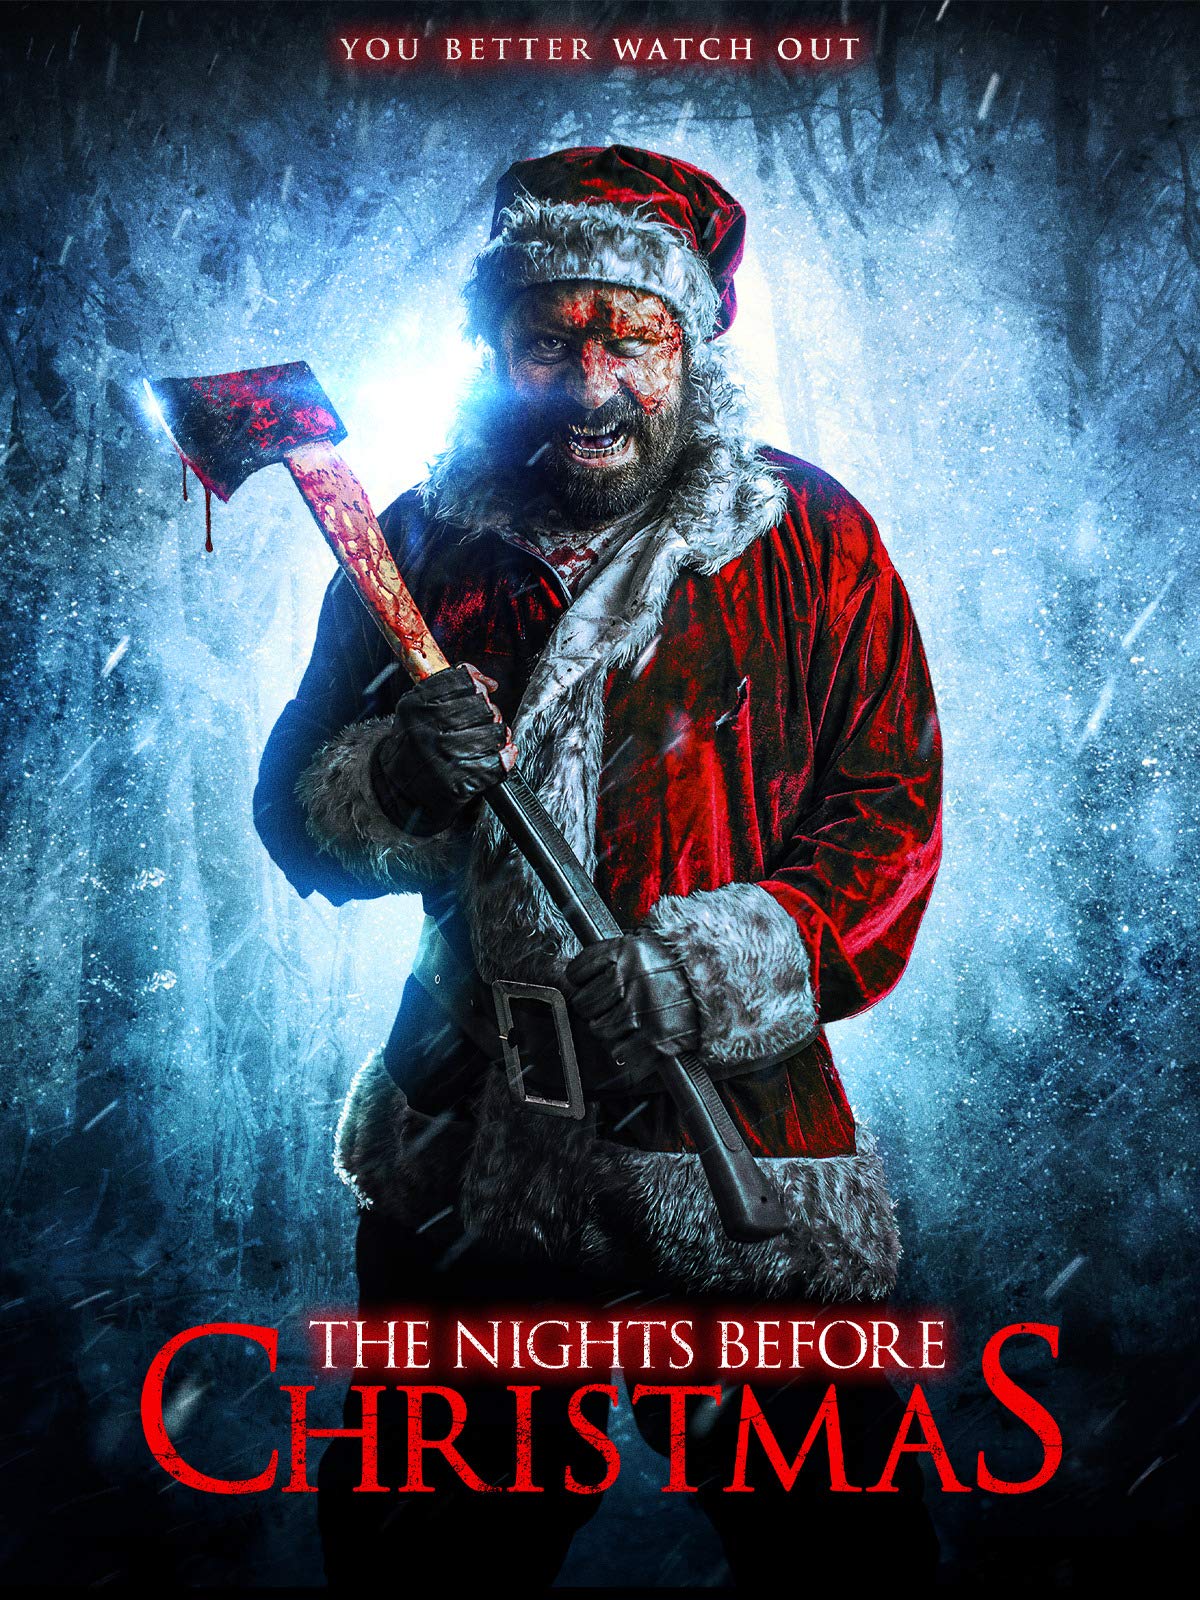 ดูหนังใหม่ The Nights Before Christmas 2019 nunghdmai